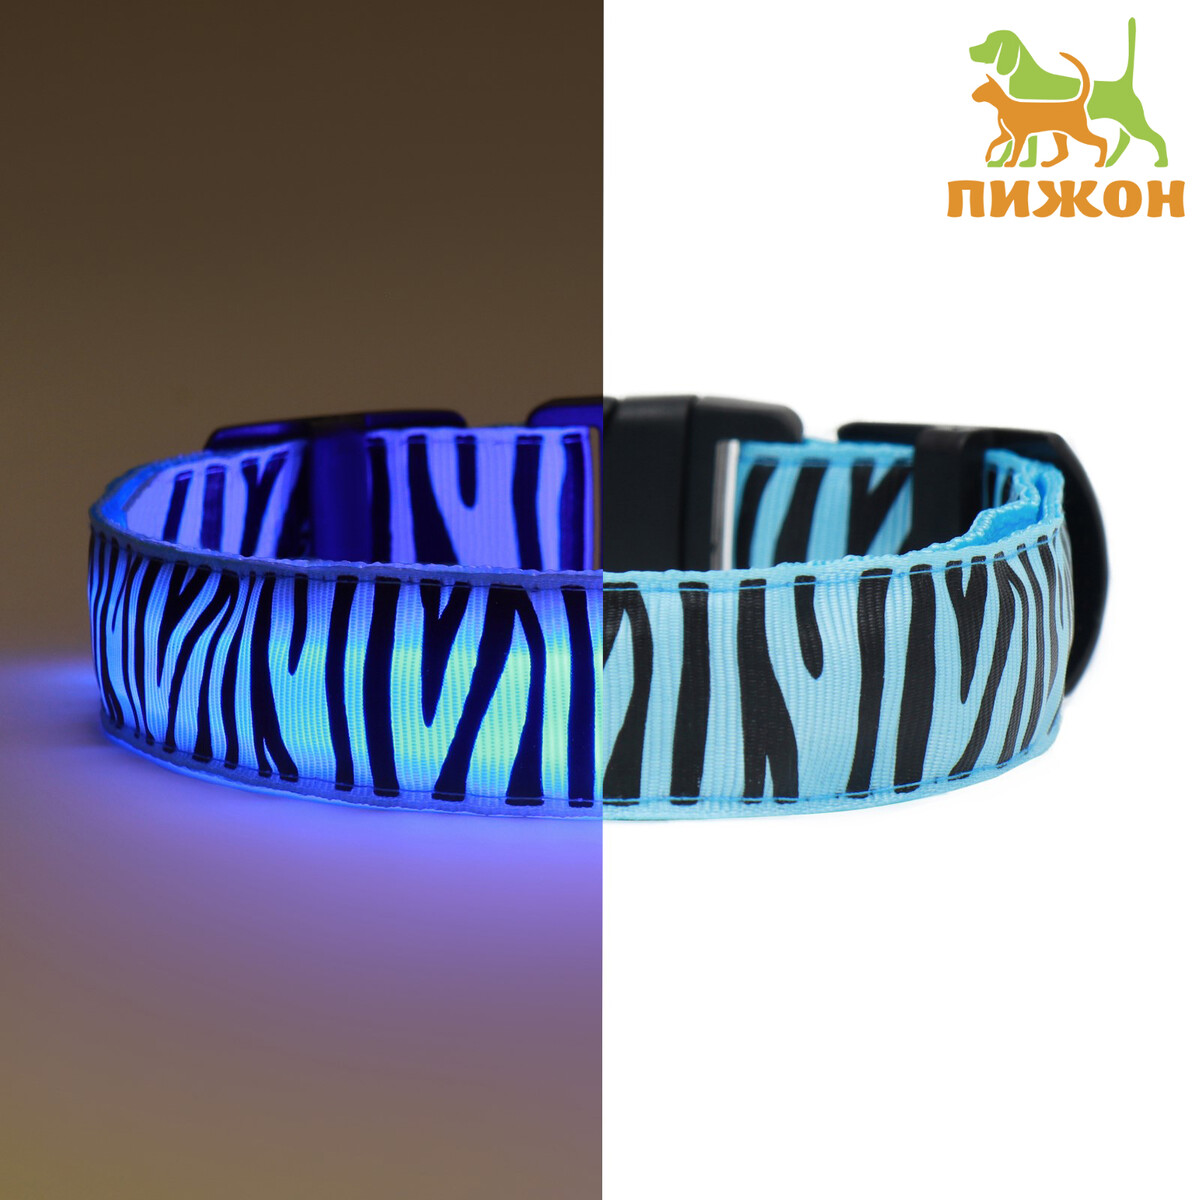 Ошейник с подсветкой тигр 3 режима свечения размер м, ош 32-50 х 2,5 см синий спать как тигр